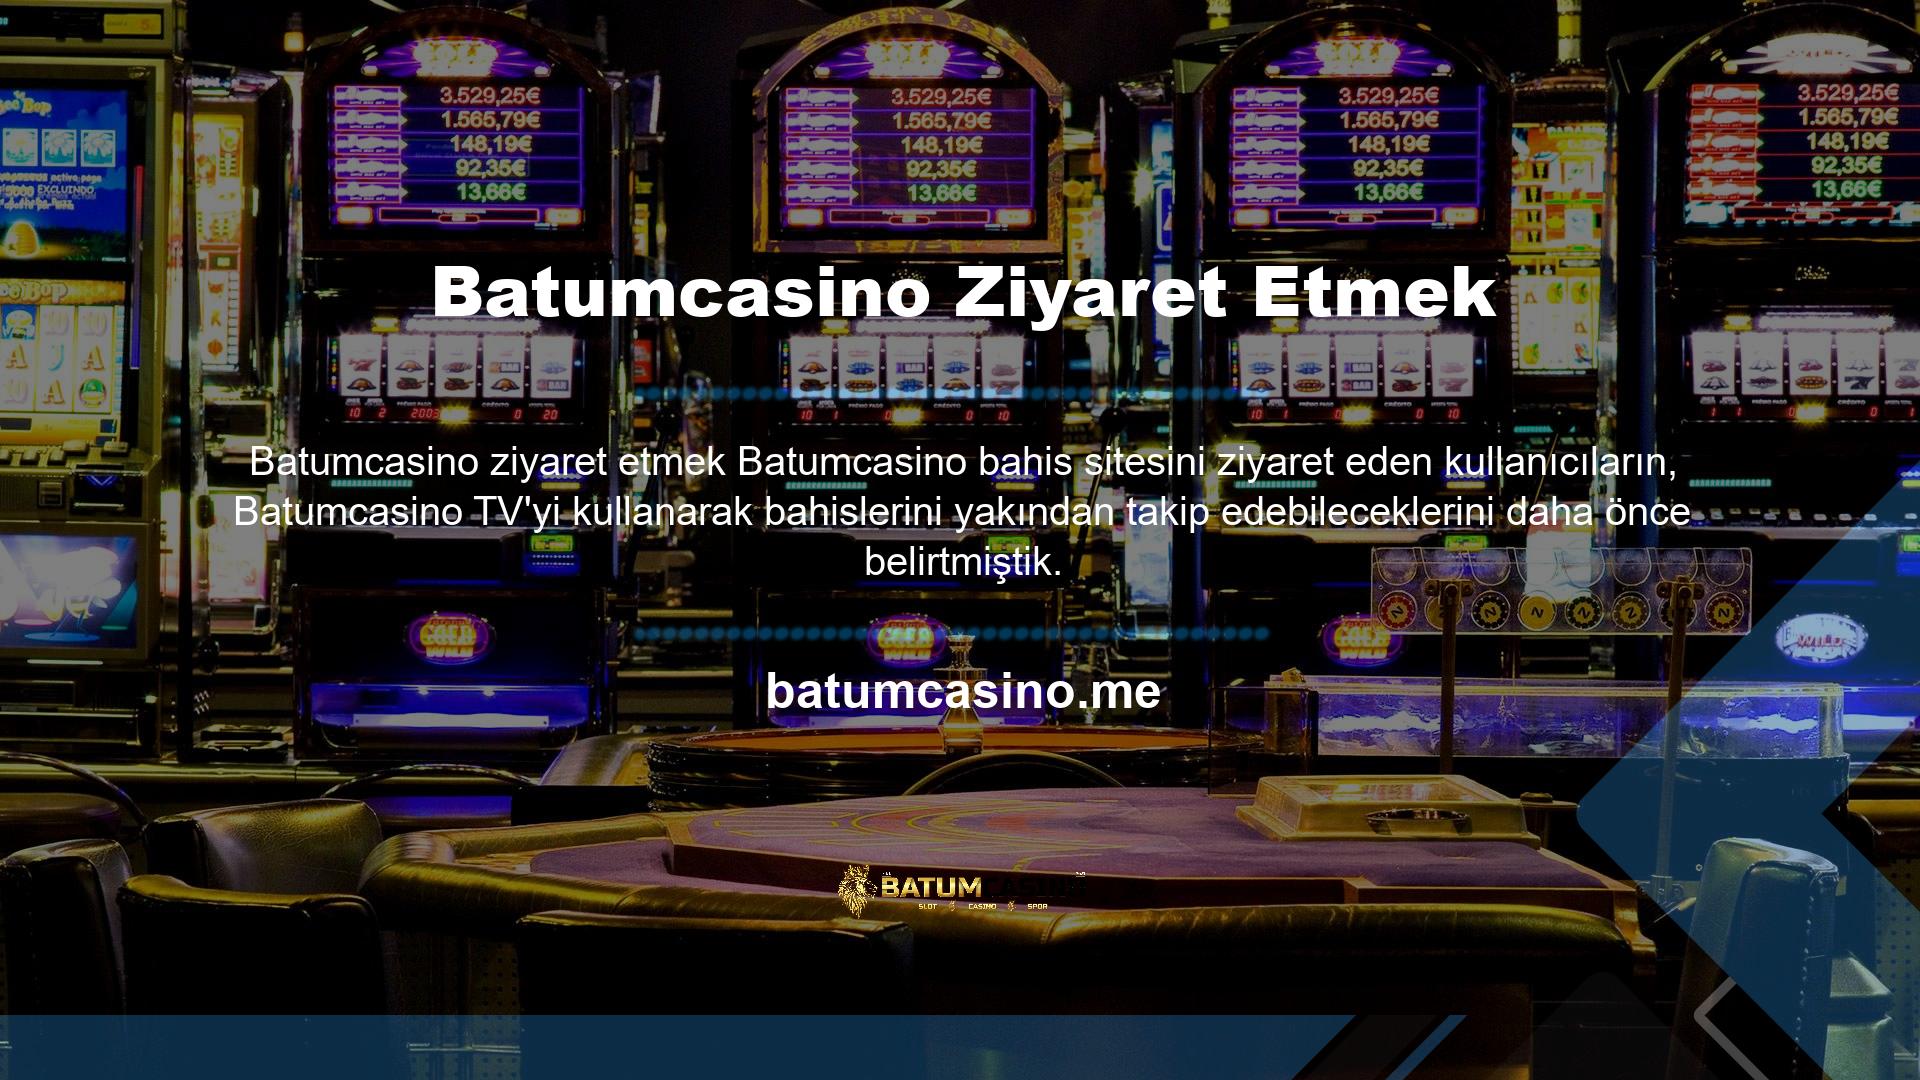 Yani casino meraklıları diğer yasa dışı casino sitelerine göre Batumcasino casino sitelerini tercih etmektedir